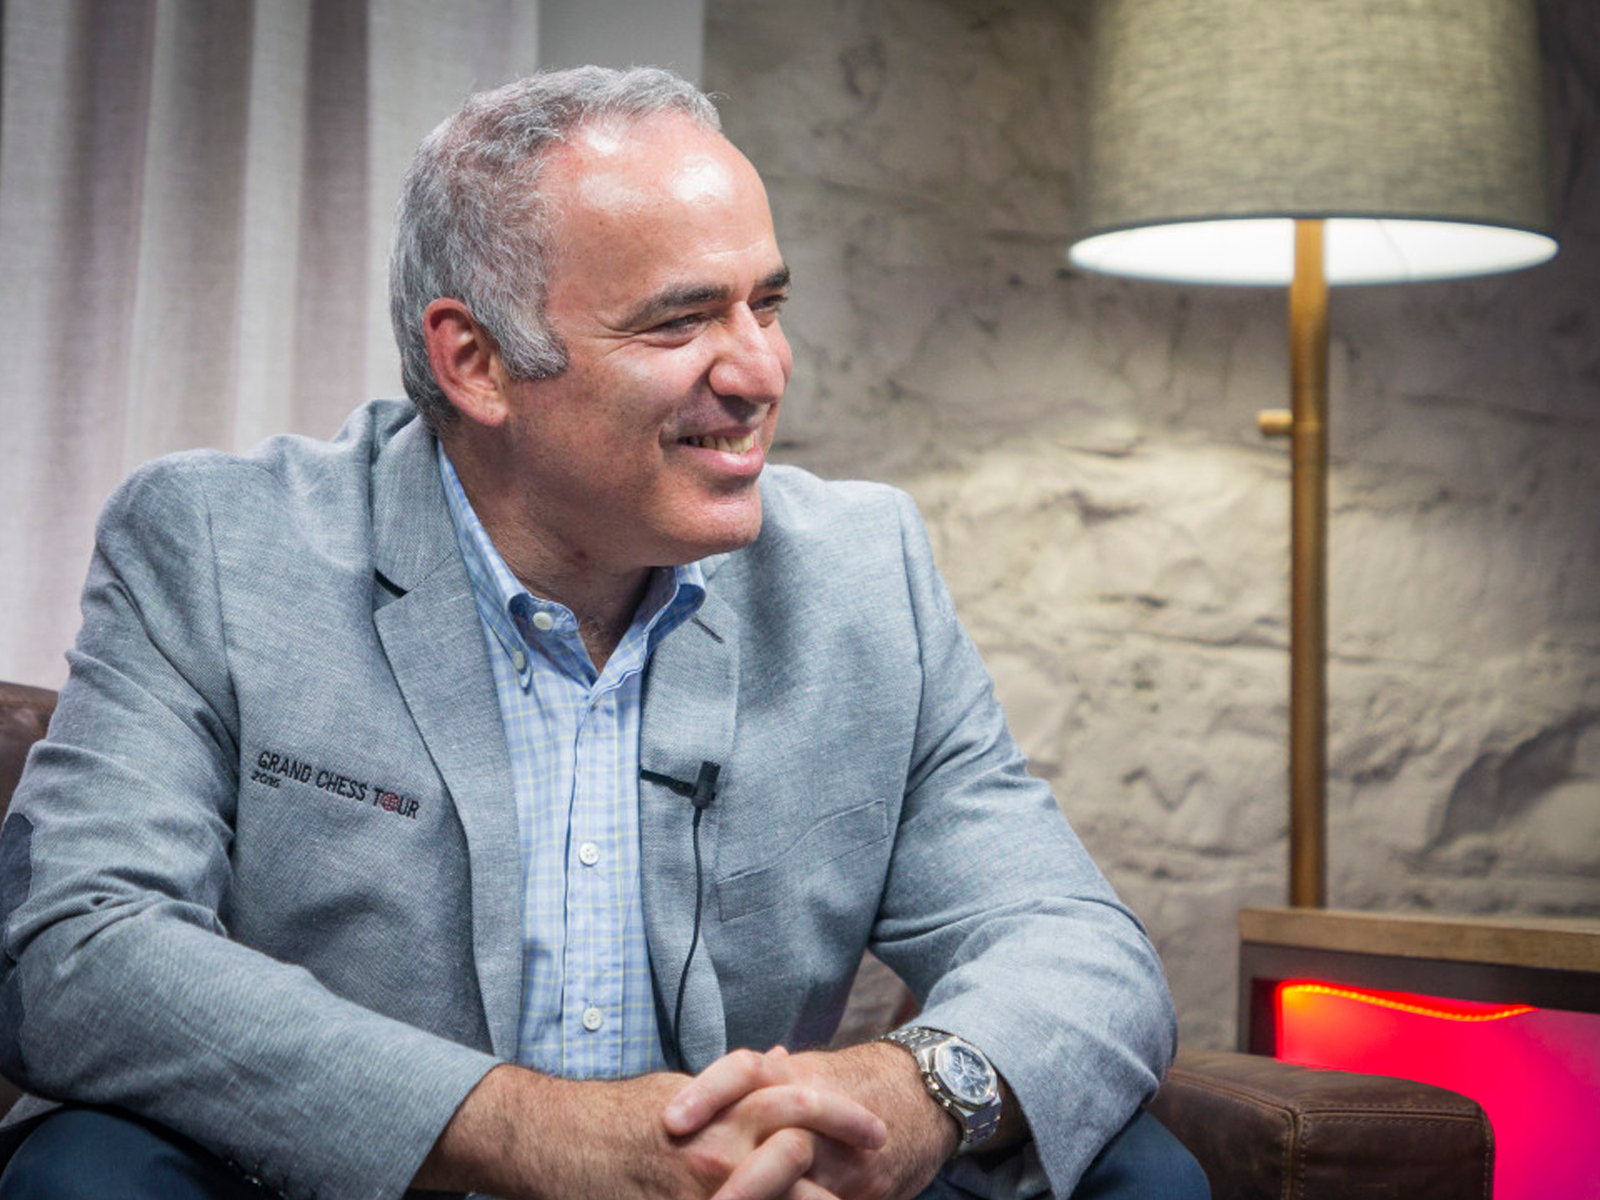 Range against the machine: Exclusive interview with Garry Kasparov